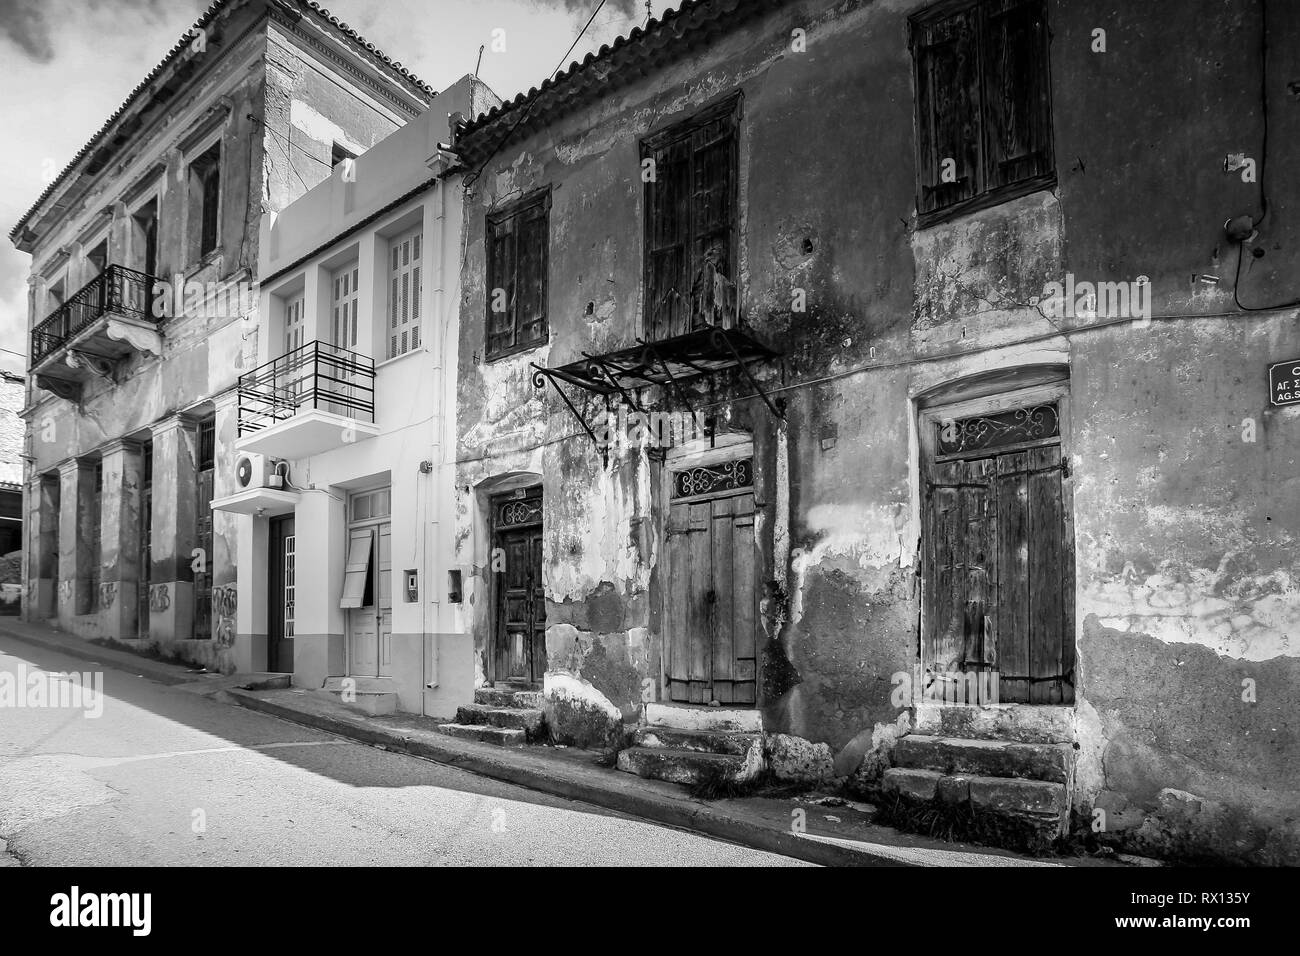 Alte, verlassene Häuser in der Stadt Pyrgos, Peloponnes, Griechenland. Häuser sind auf einem neoklassizistischen Stil, der in den 20er Jahren blühte gebaut Stockfoto